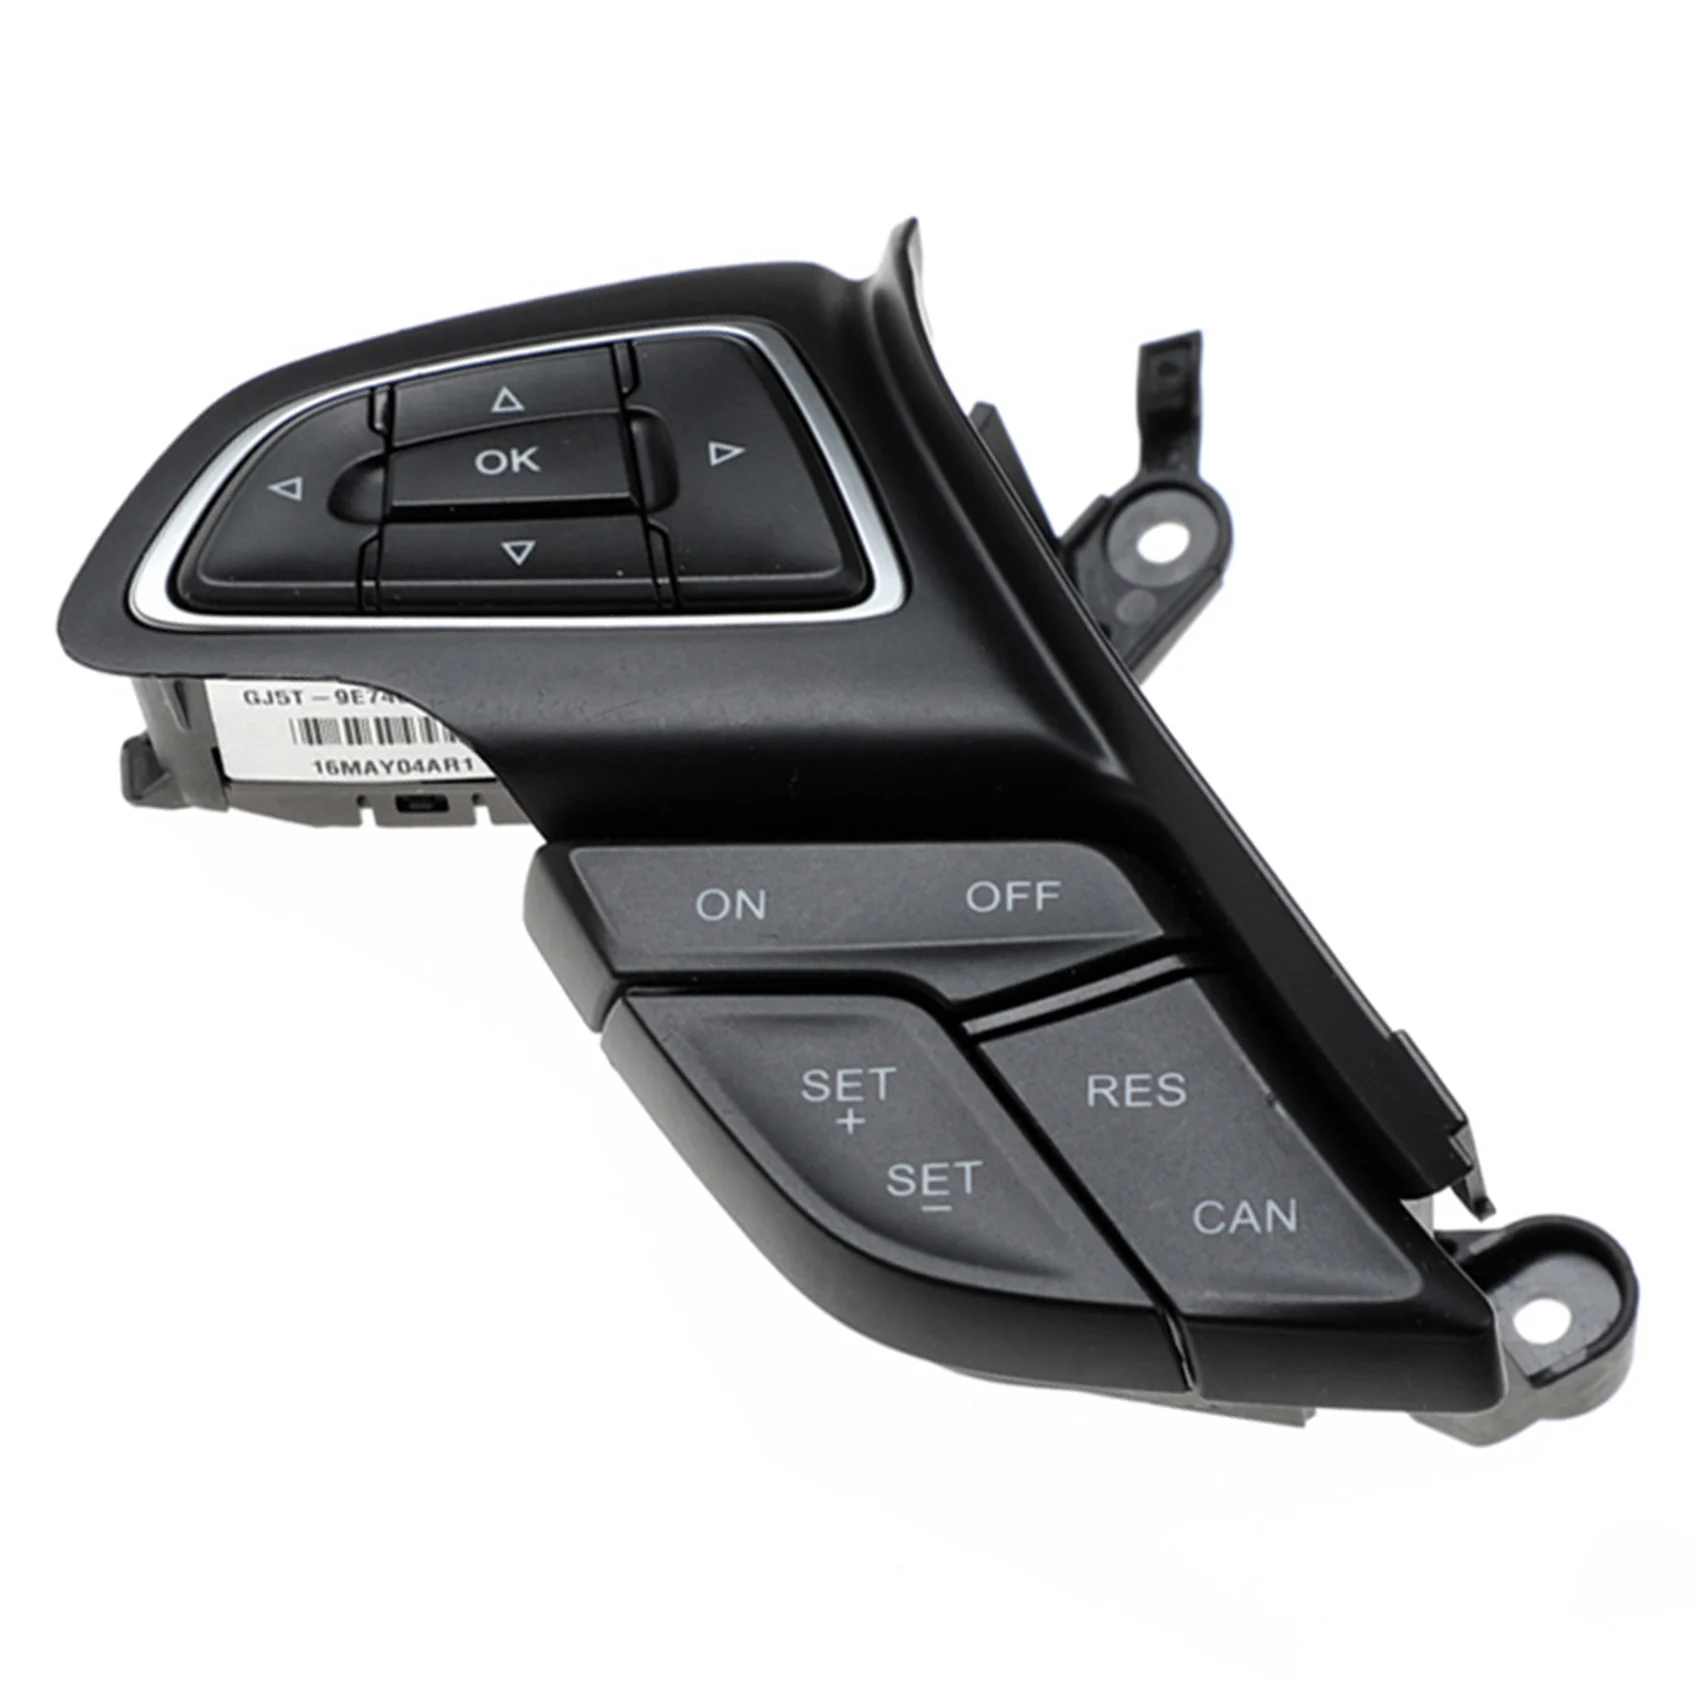 

Автомобильный переключатель круиз-контроля, Многофункциональная кнопка рулевого колеса, Bluetooth, кнопка аудио для Ford Focus Mk3 Kuga 2015-2017